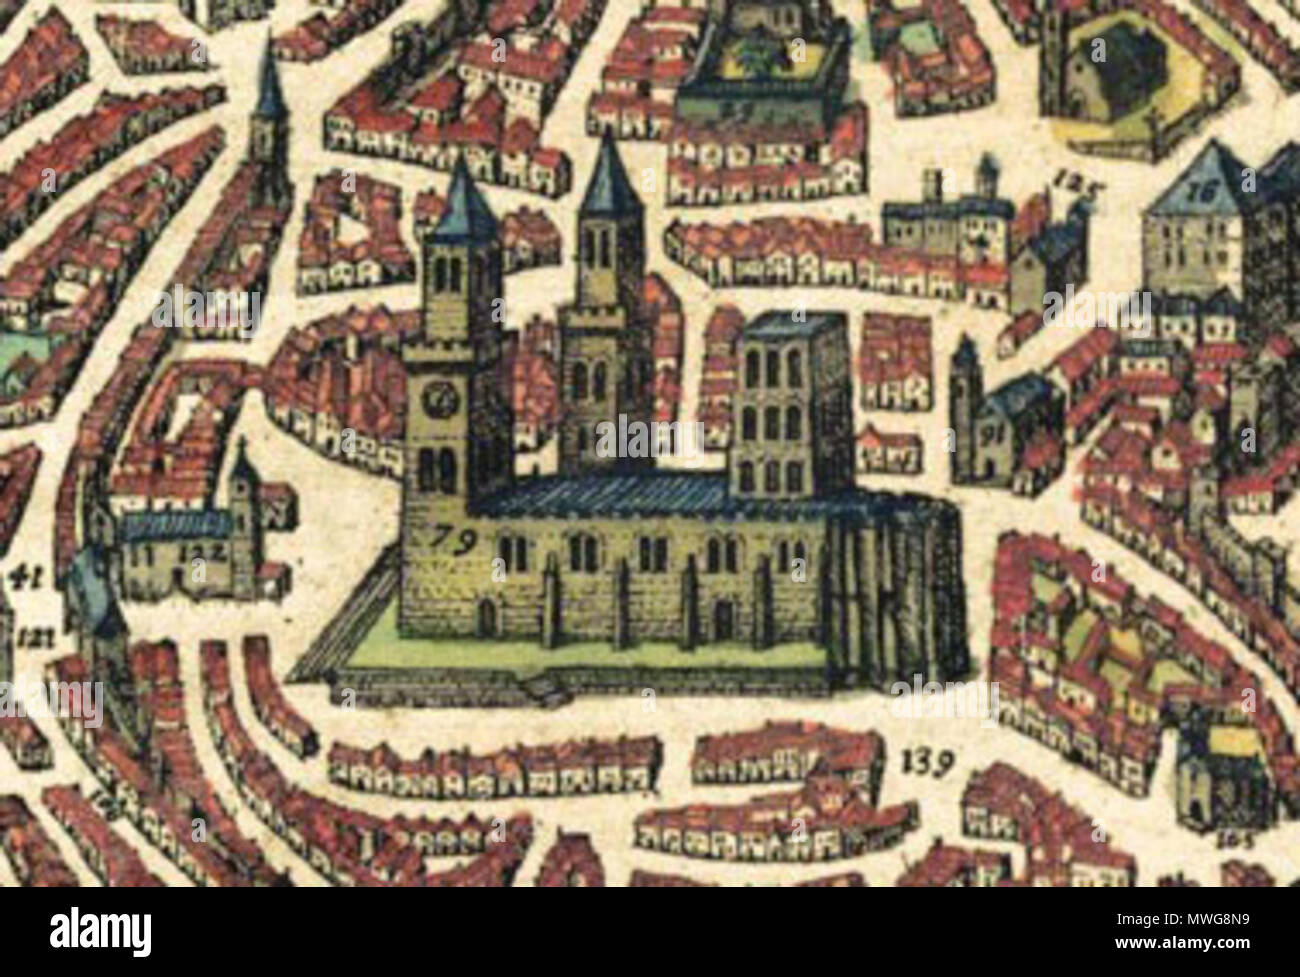 . Englisch: Kathedrale von Lissabon in einem Stadtplan von 1598. ca. 1598. Georg Braun und Franz Hogenberg 373 LisbonCathedral -1598 Stockfoto